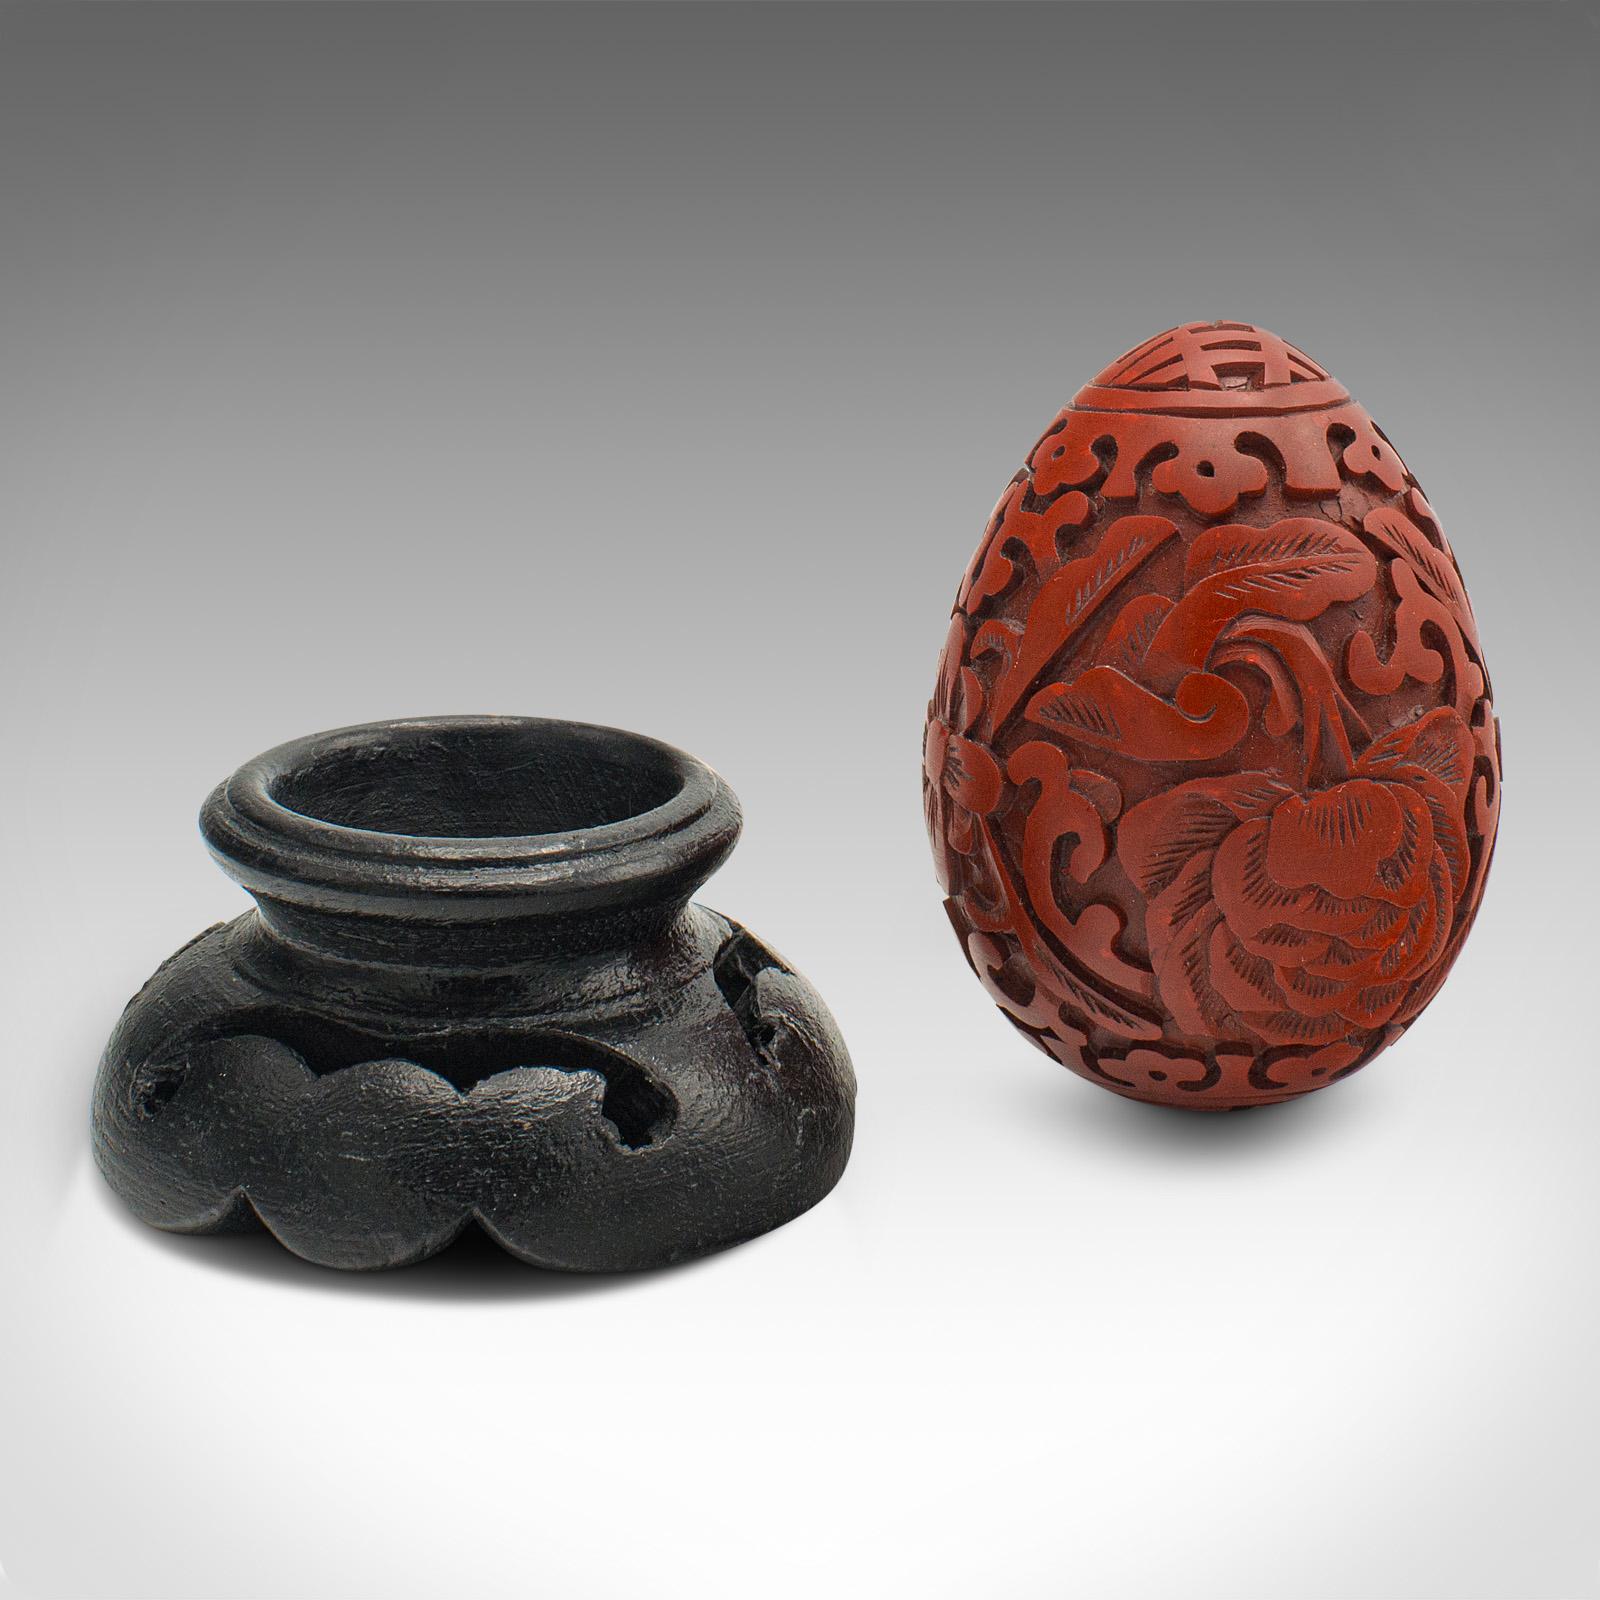 Dies ist ein kleines dekoratives Ei im Vintage-Stil. Chinesisches Zinnober-Ornament auf ebonisiertem Ständer aus der Mitte des 20. Jahrhunderts, um 1970.

Buntes geschnitztes Ei mit ansprechenden Details
Zeigt eine wünschenswerte gealterte Patina